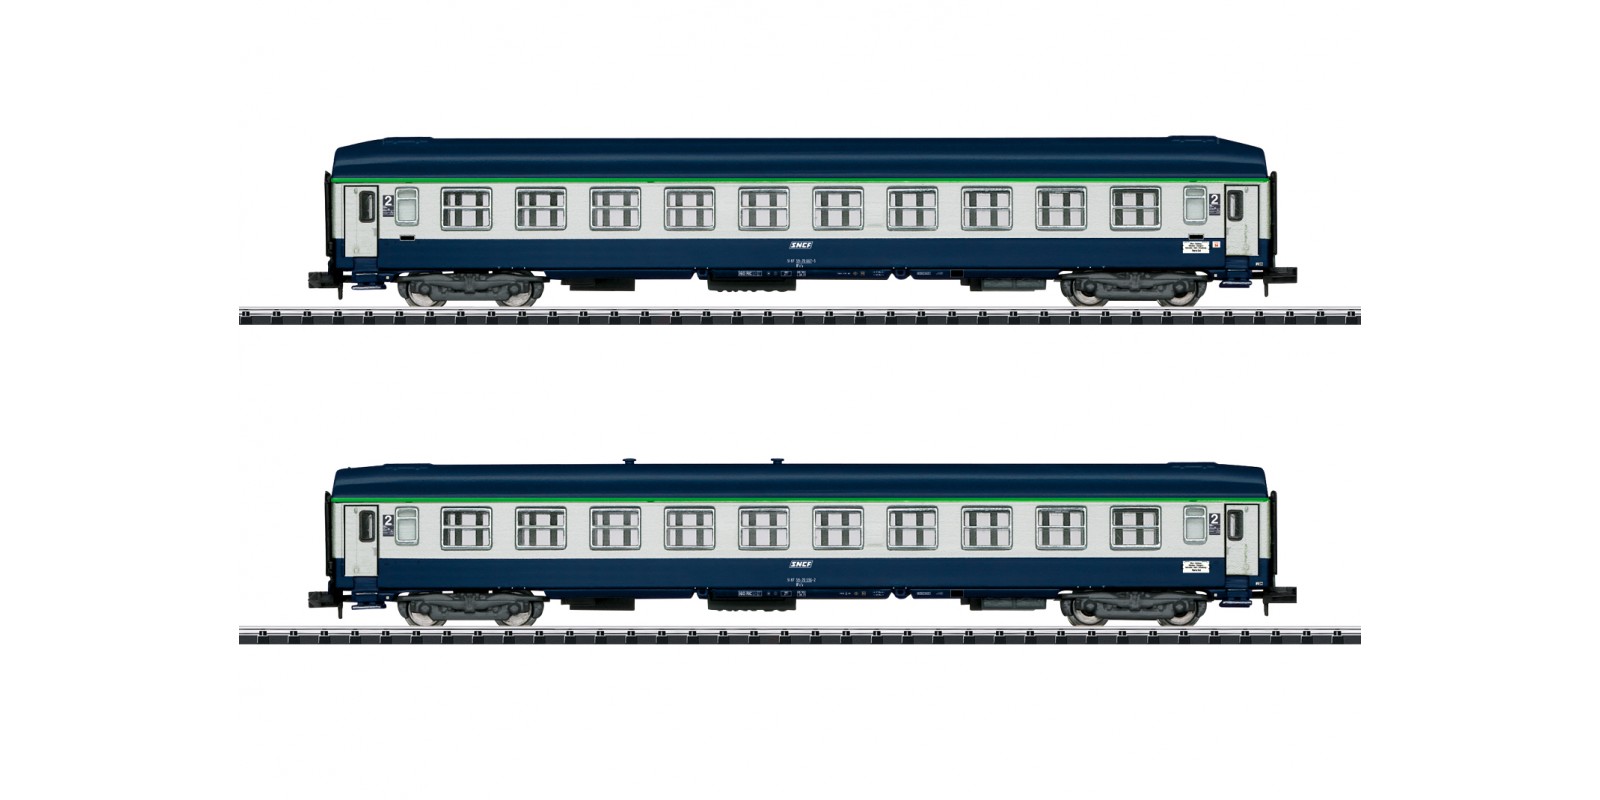 T15373 "Orient Express" Express Train Passenger Car Set